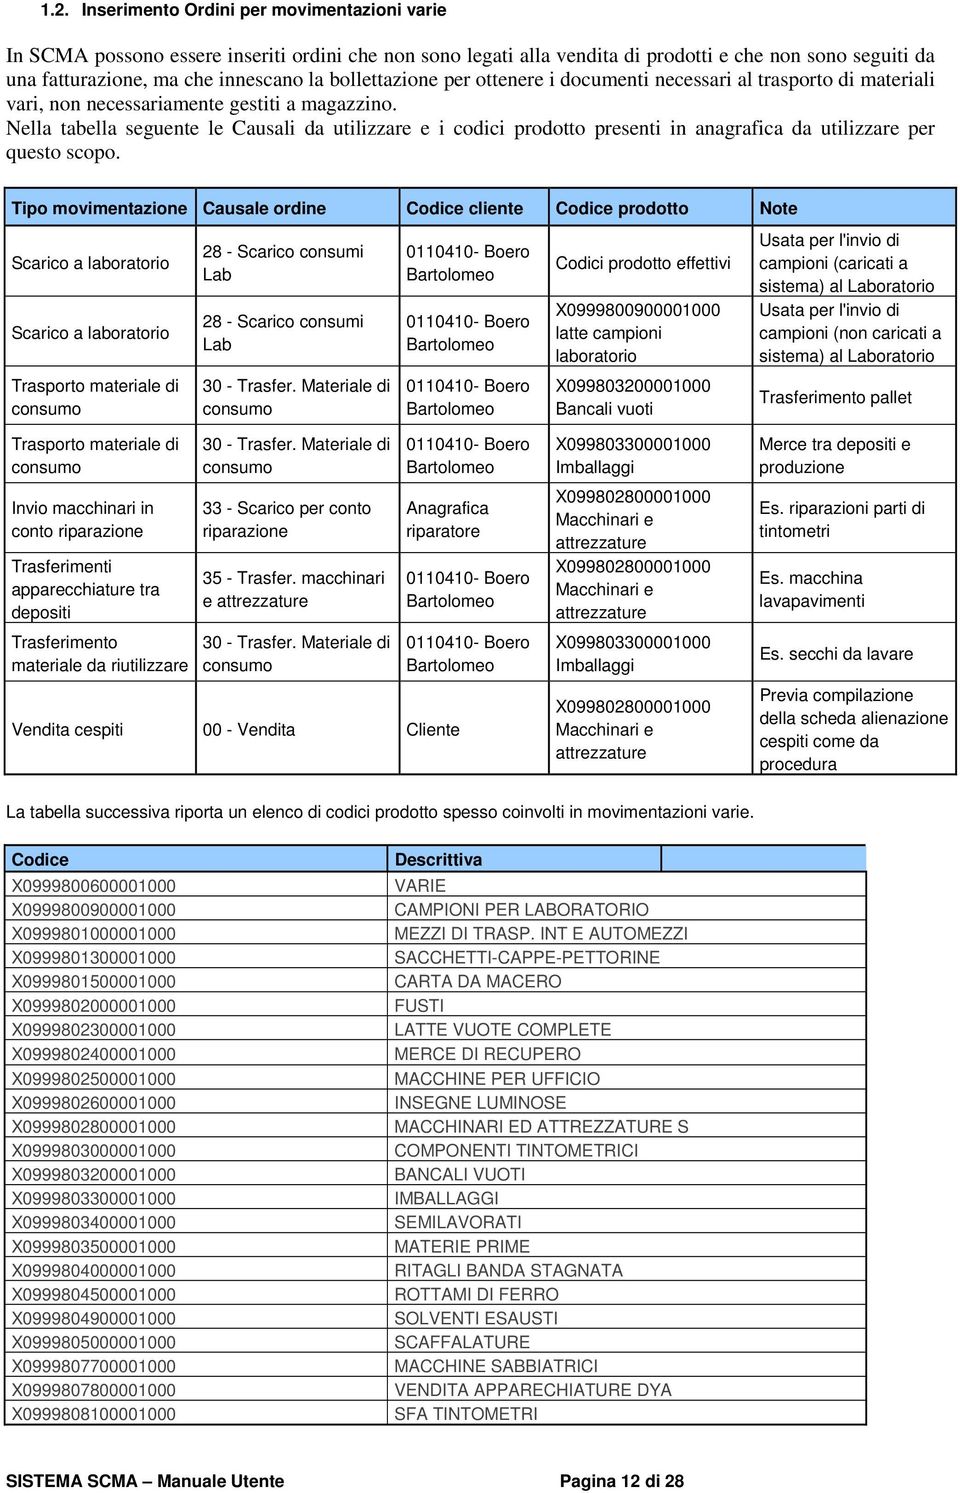 Nella tabella seguente le Causali da utilizzare e i cdici prdtt presenti in anagrafica da utilizzare per quest scp.